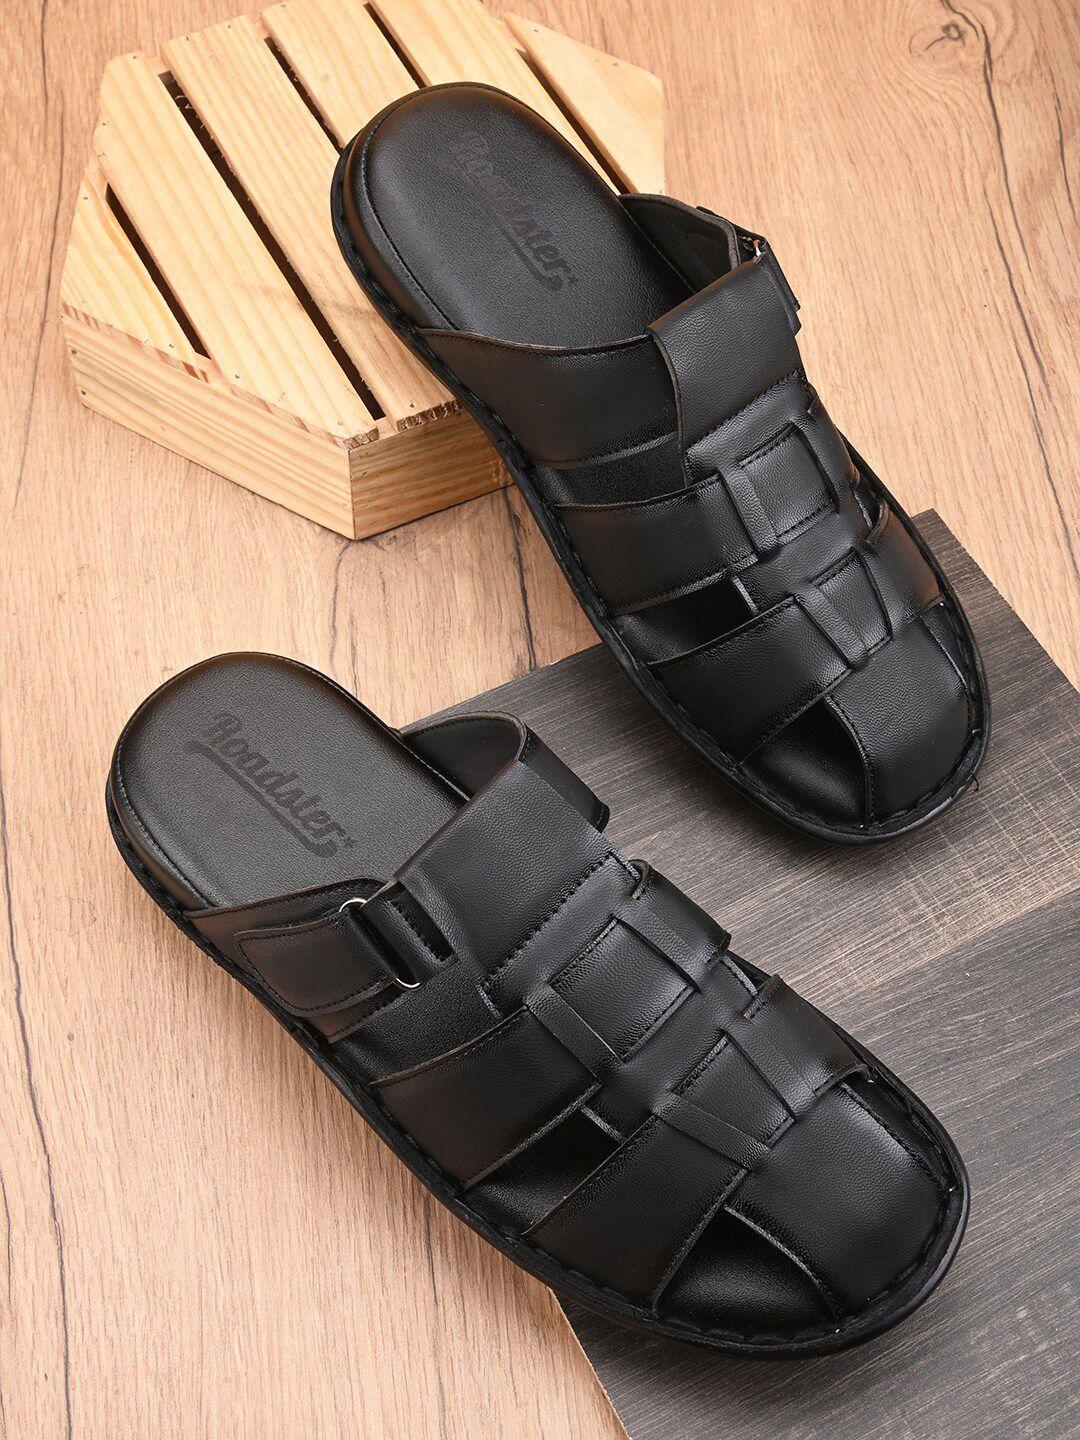 Roadster Men Black Slip On Comfort Sandals